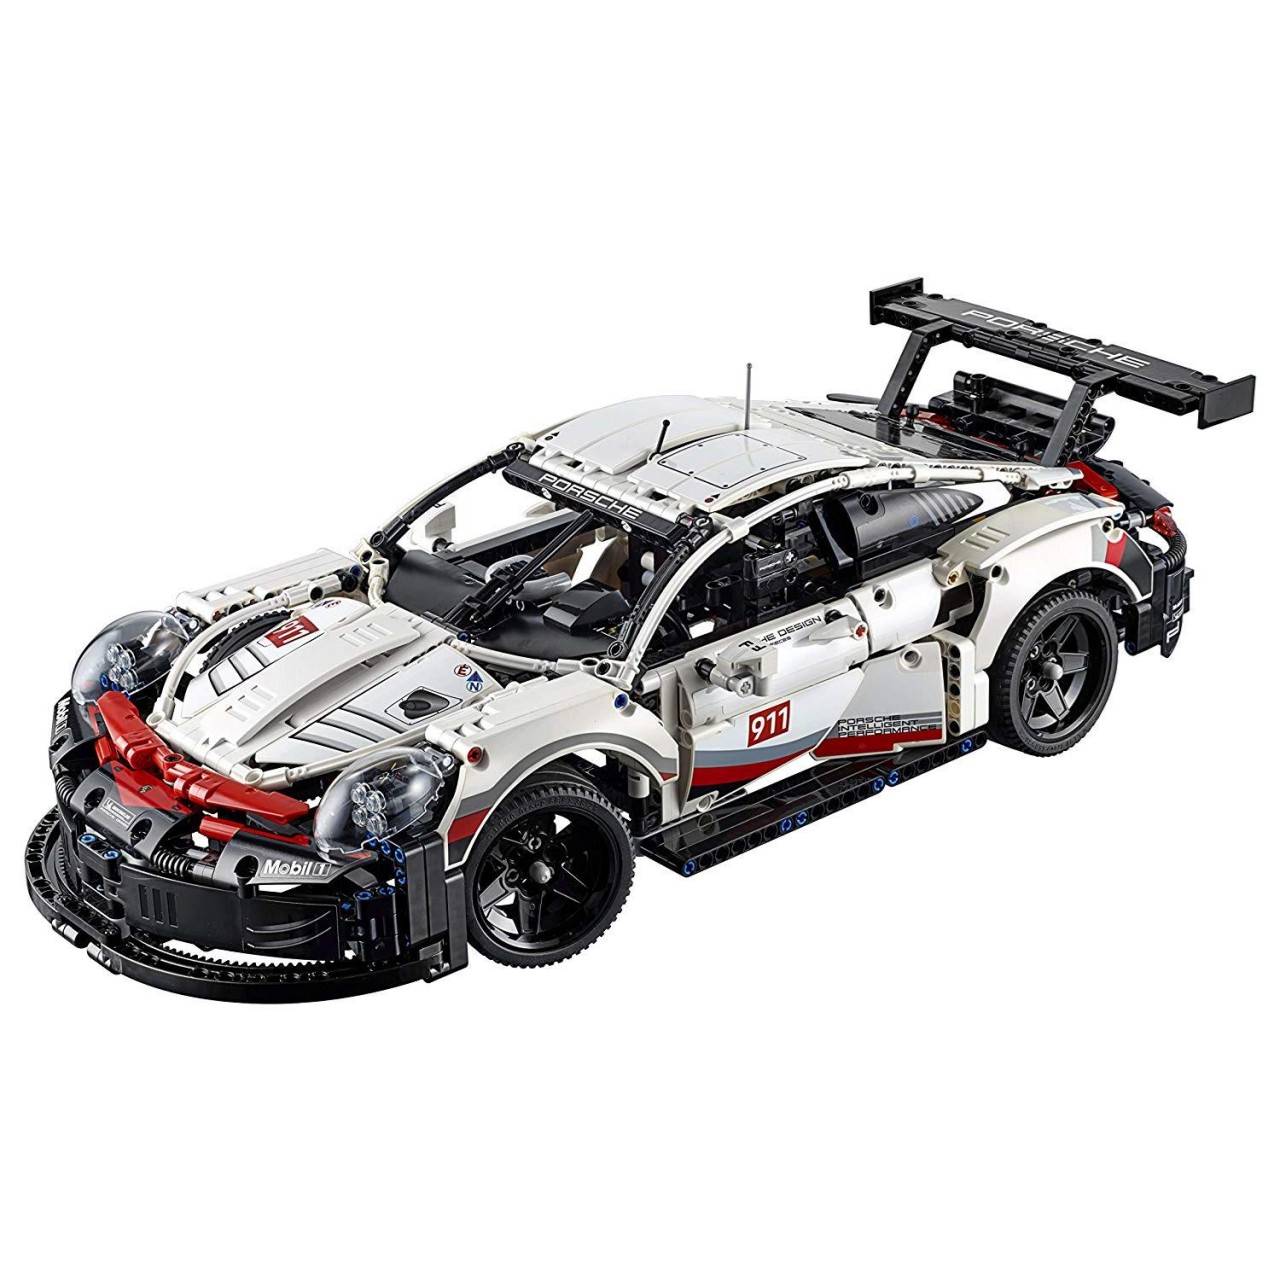 LEGO TECHNIC 42096 Porsche 911 RSR